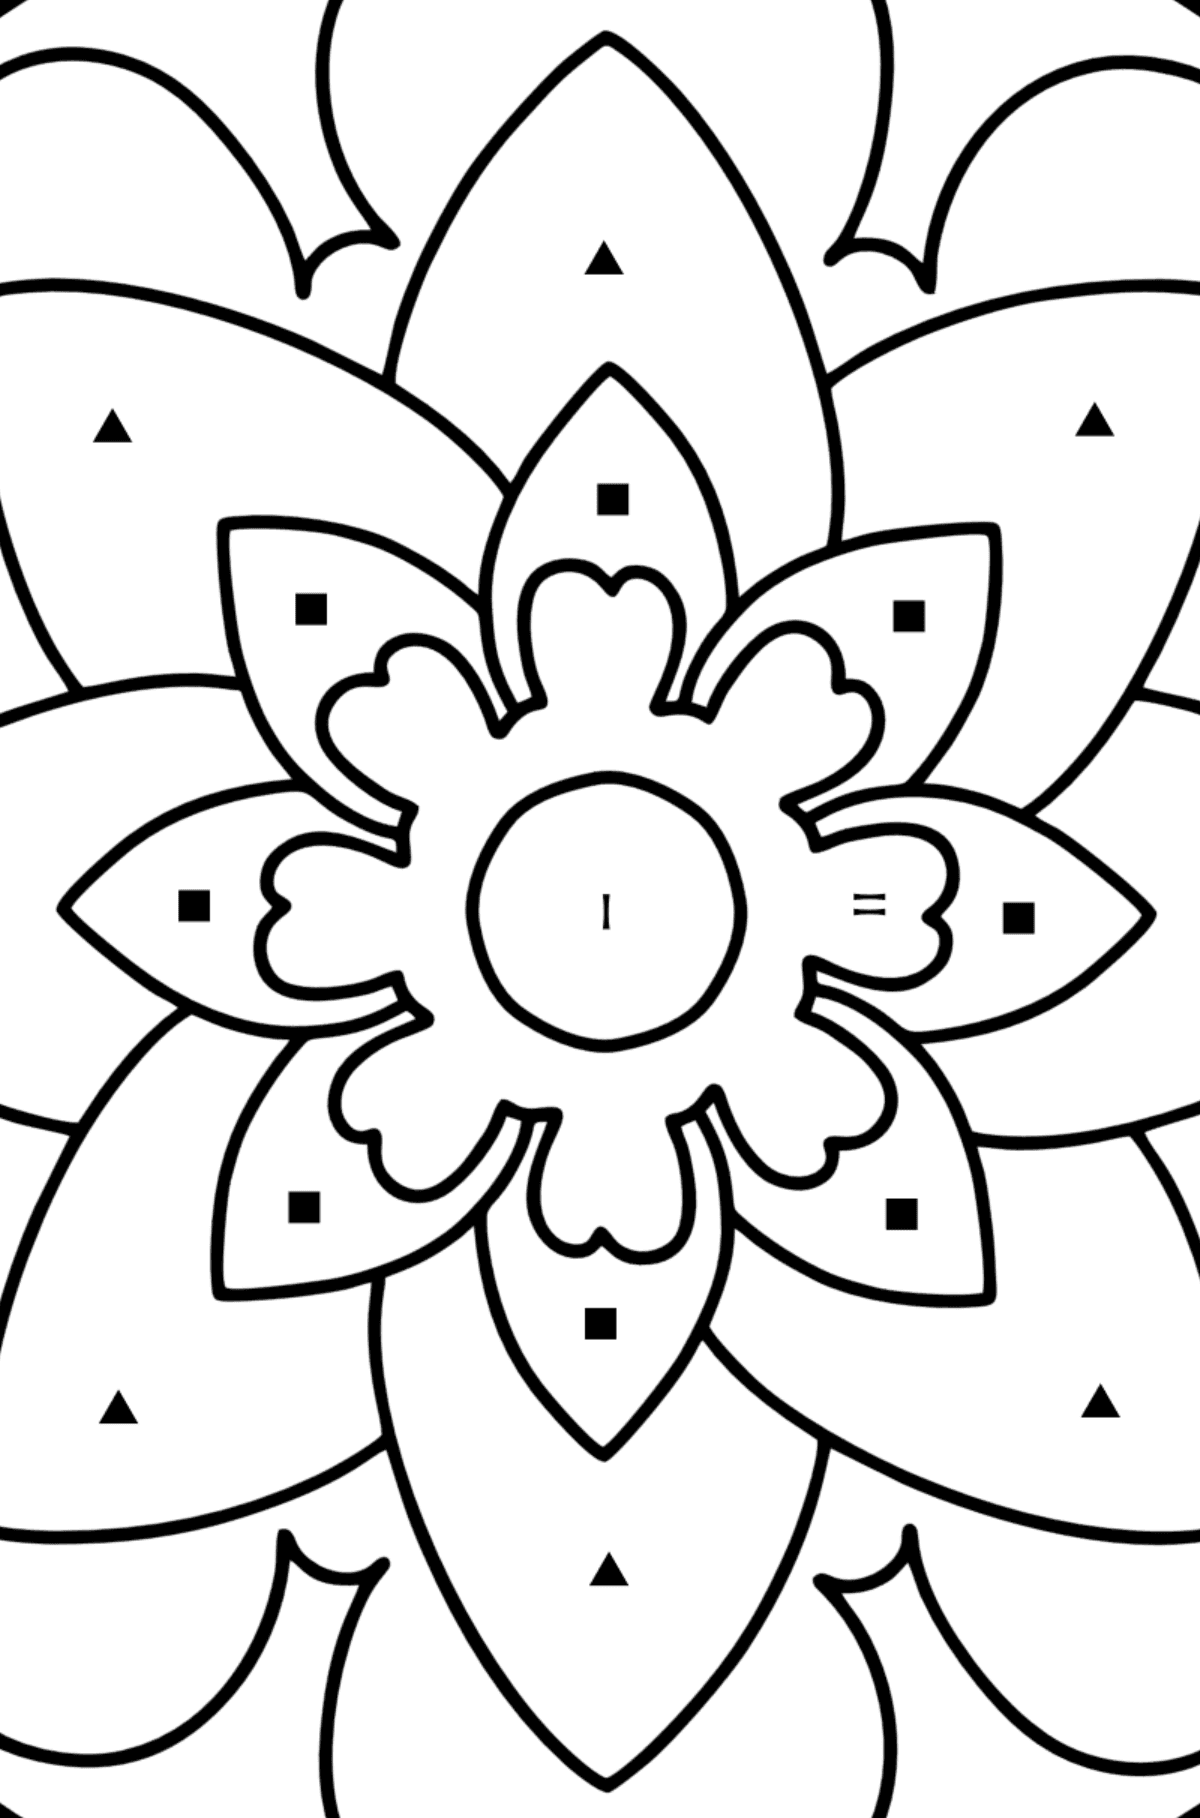 Kolorowanka Mandala - 20 elementów - Kolorowanie według symboli dla dzieci